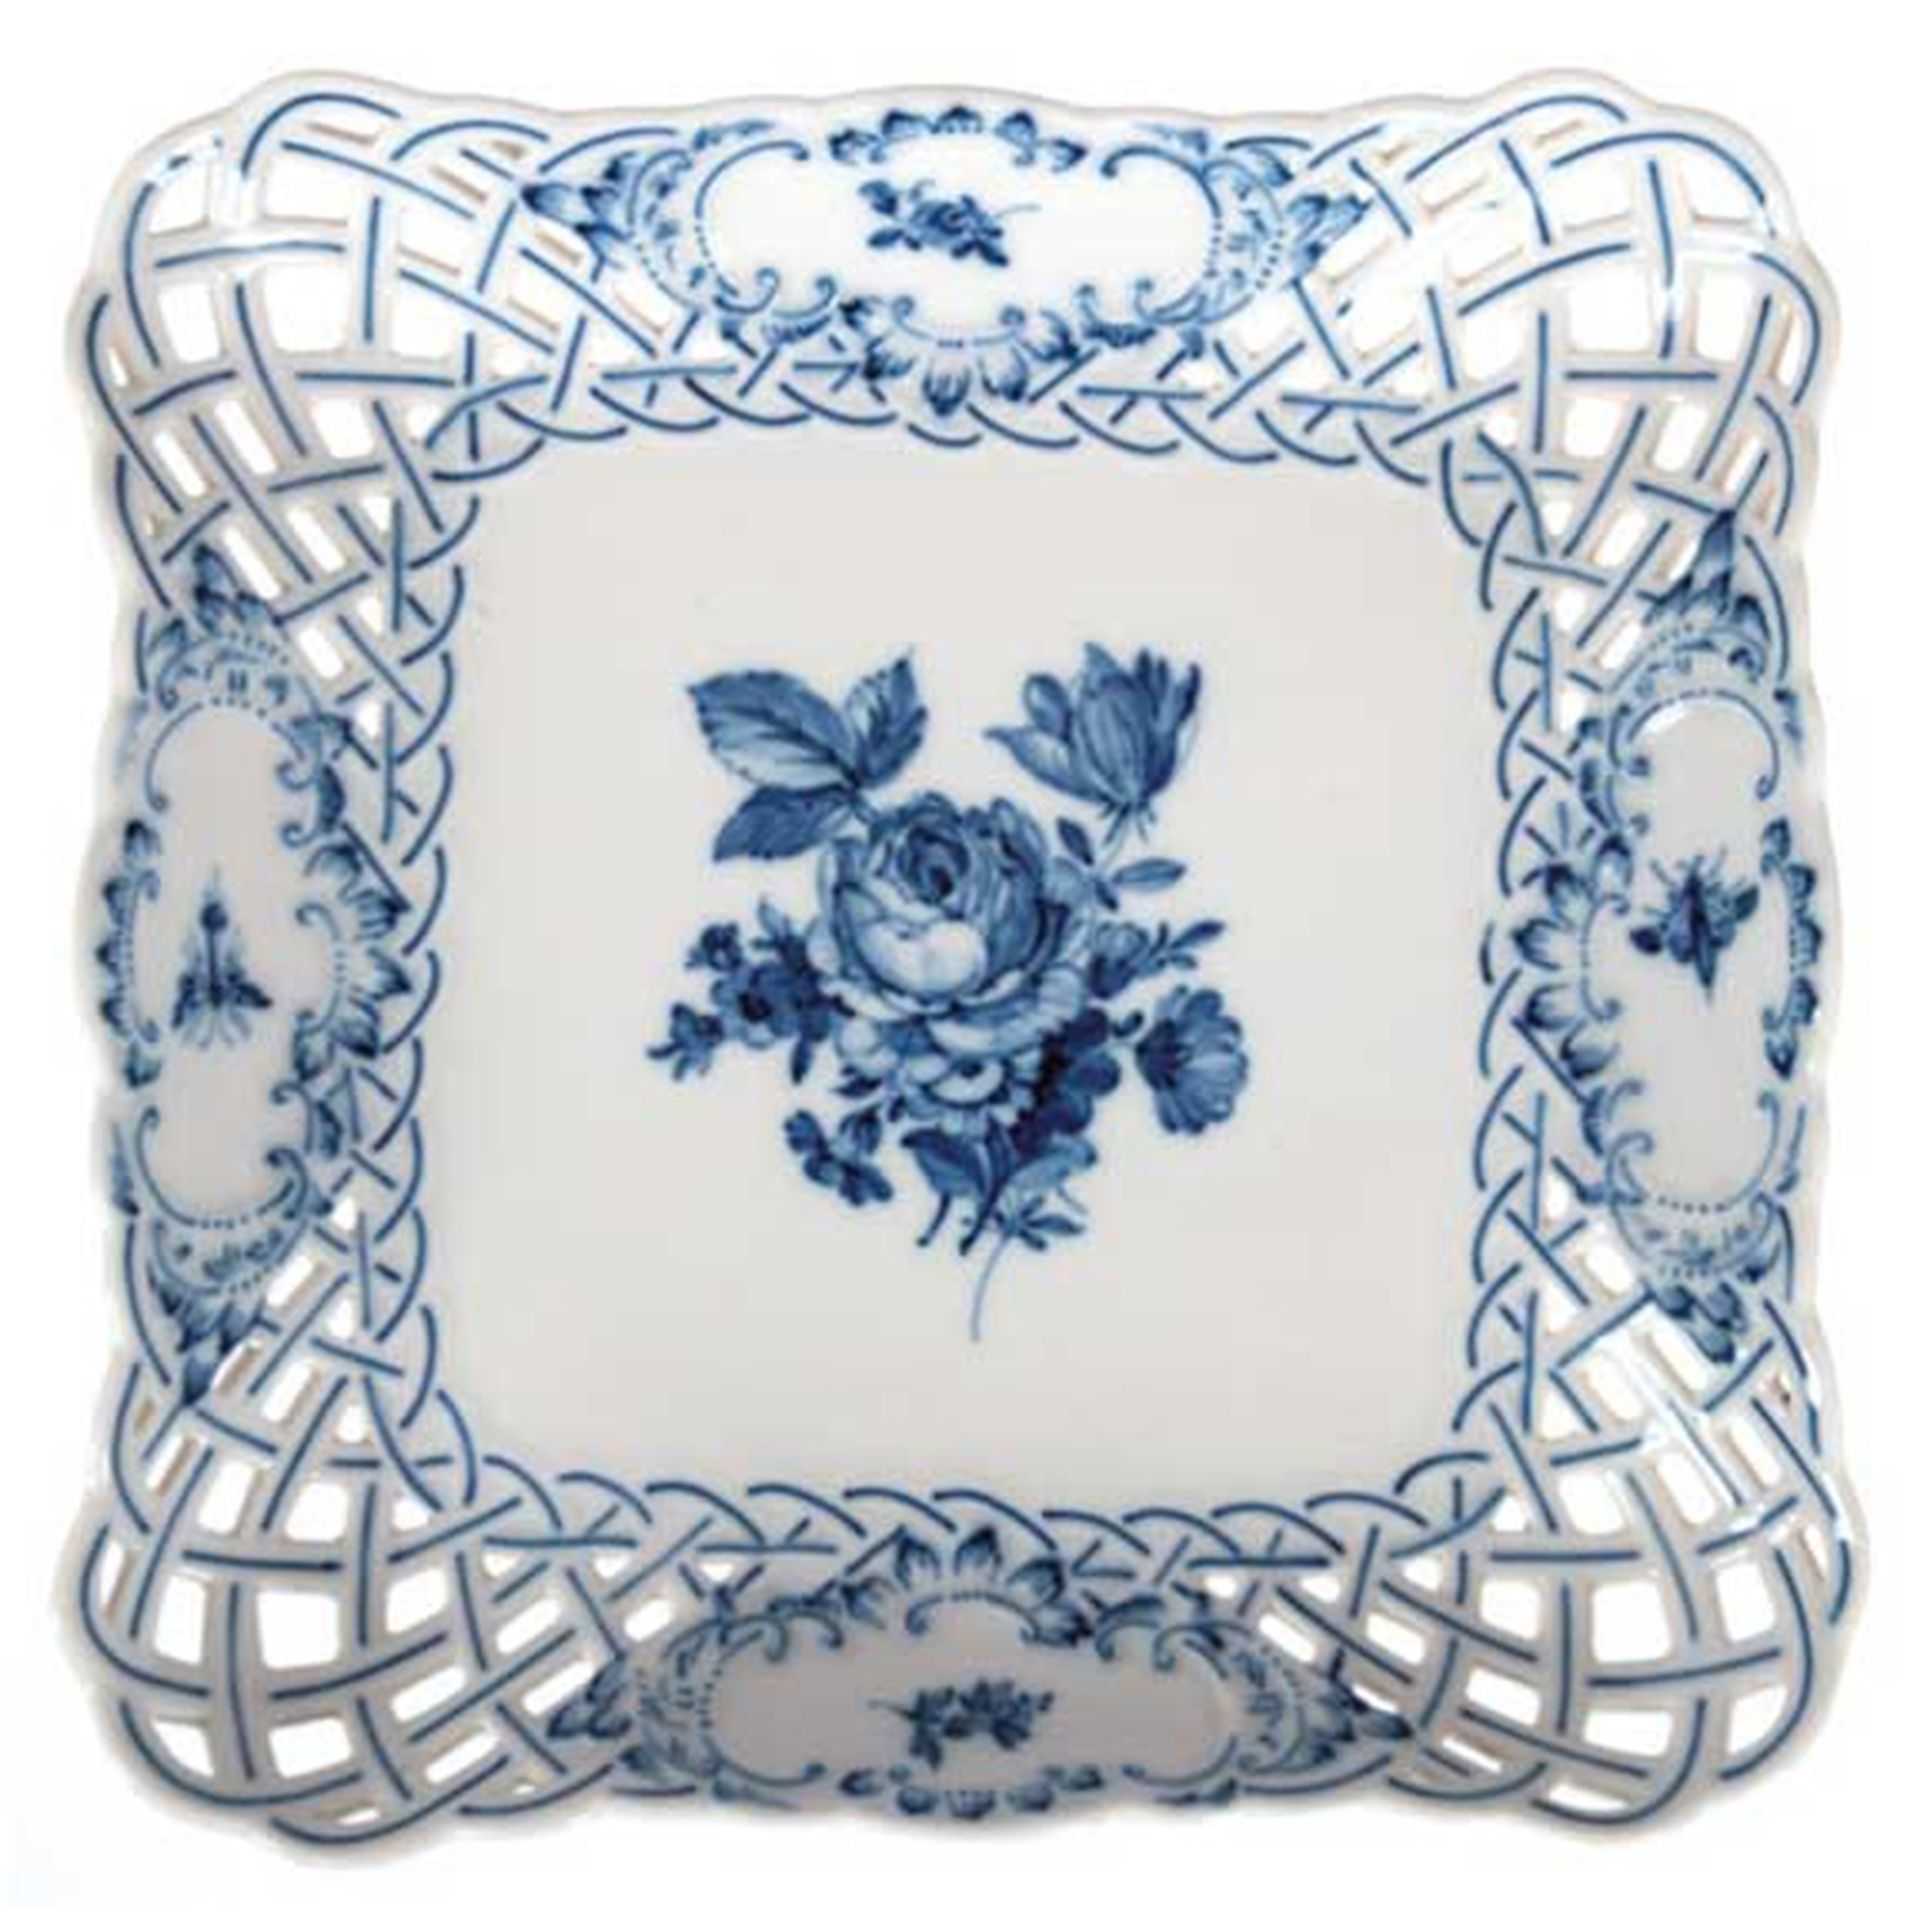 Meissen-Schale, blaue Blumenmalerei, quadratische Form mit durchbrochenem Rand mit Reliefkartuschen